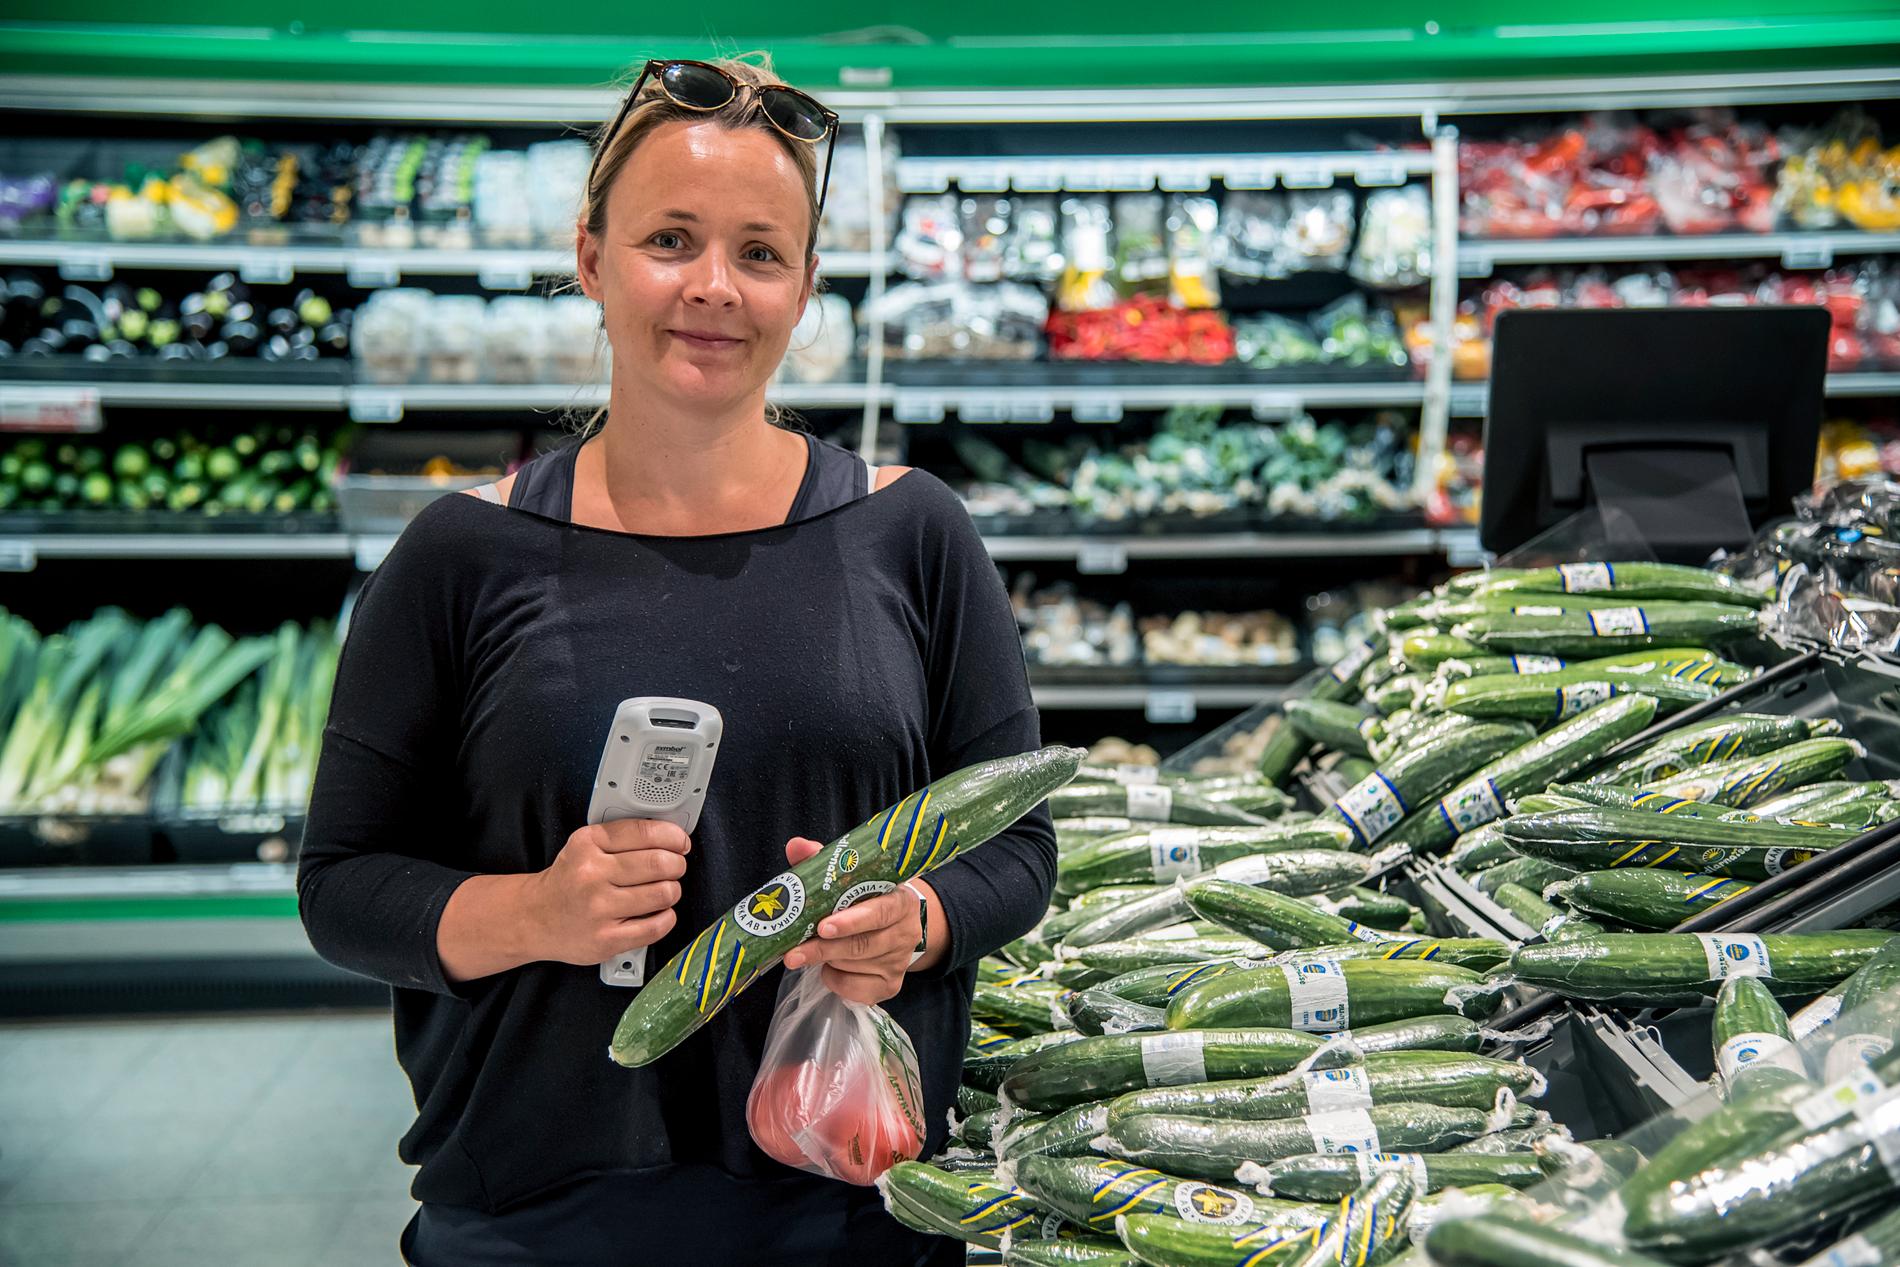 Är grönsakerna för dyra?– Nej, så länge man köper efter säsong går det bra. Men ekogrönsakerna är för dyra, säger Maria Rydell, 35, kundansvarig, Stockholm.